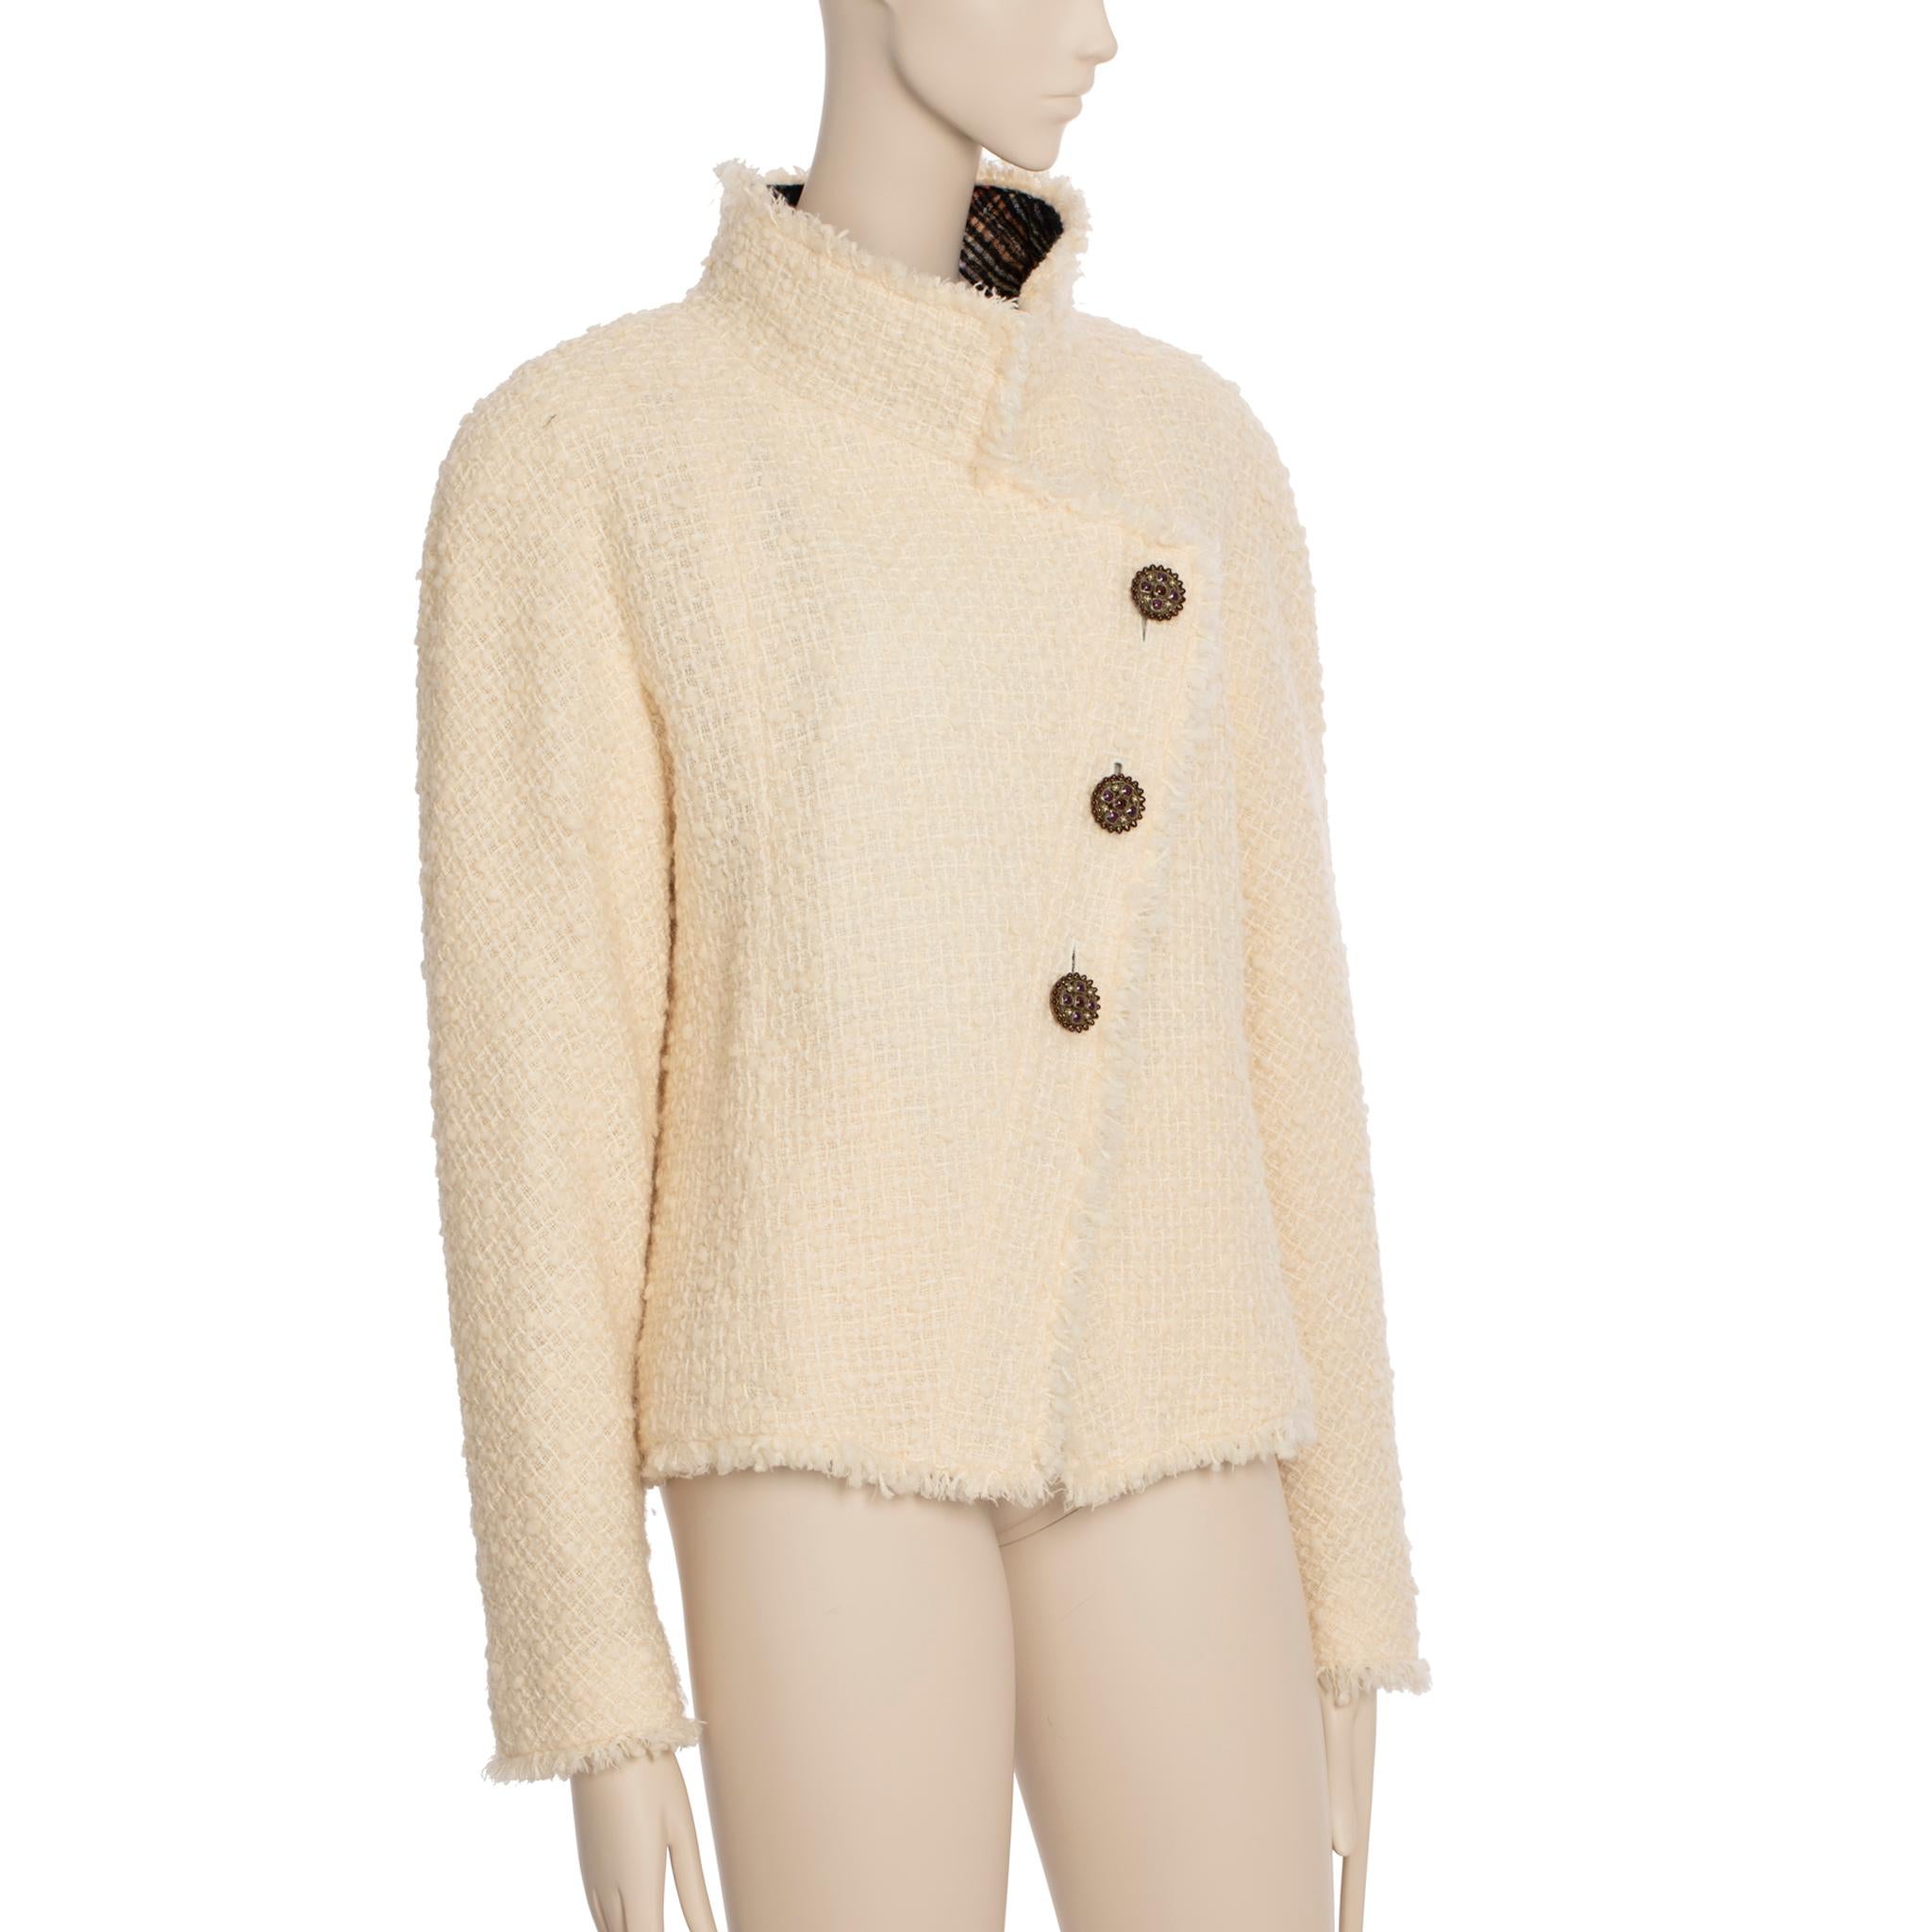 Diese cremefarbene Tweedjacke von Chanel ist der perfekte Winterbegleiter. Das weiche Tweed-Außenmaterial und das karierte Innenfutter sorgen dafür, dass Sie warm und stilvoll bleiben. 

Marke: Chanel

Produkt: Tweed-Jacke

Größe: 42 Fr

Farbe: